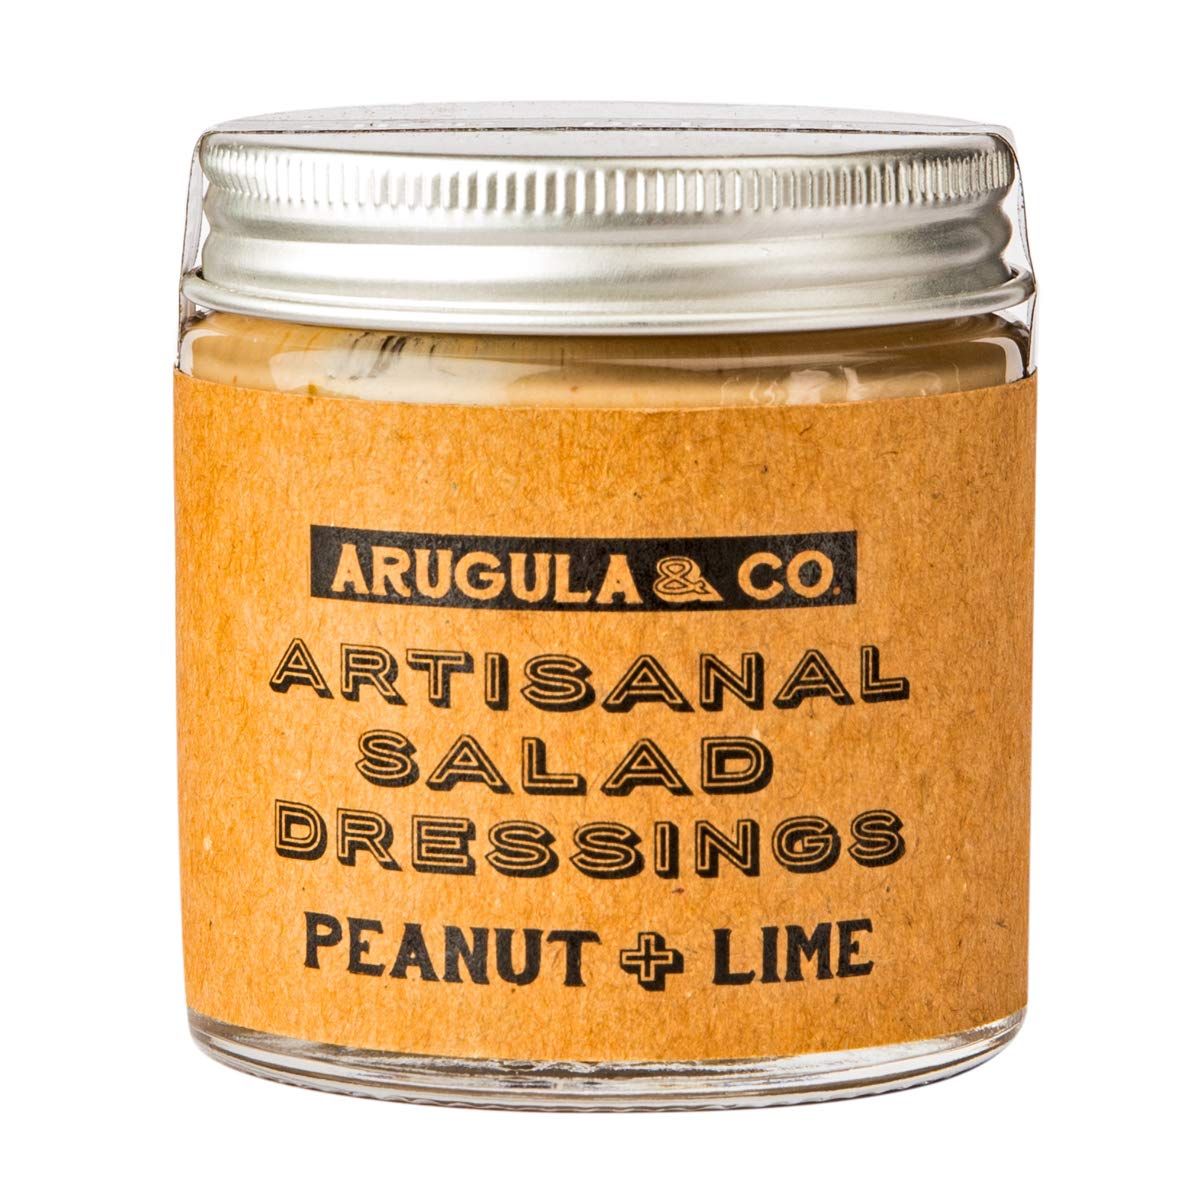 Arugula & Co. Peanut Lime Salad Dressing Image